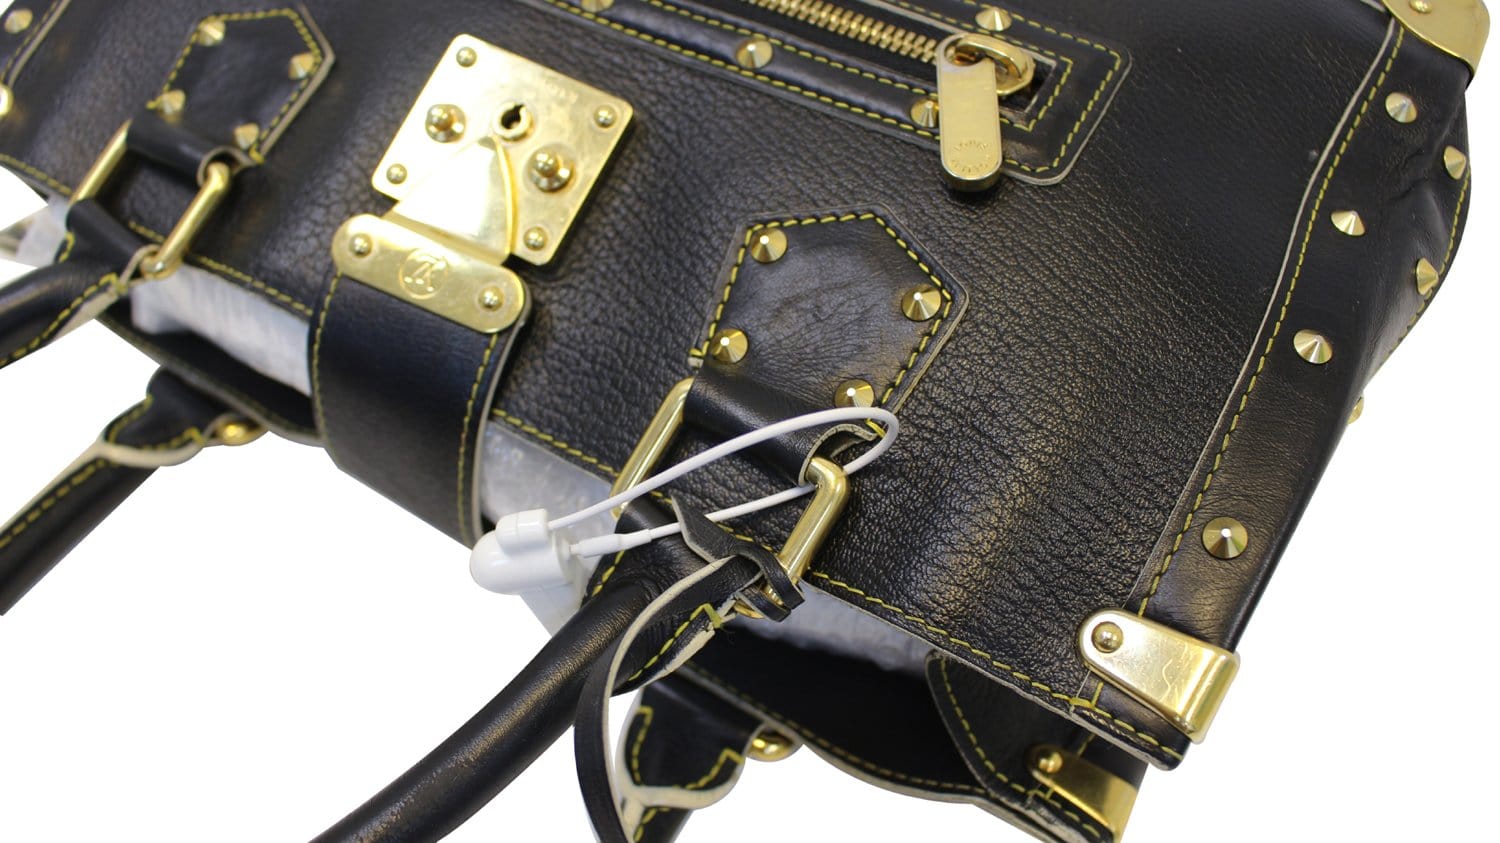 Louis Vuitton Leather Clochette